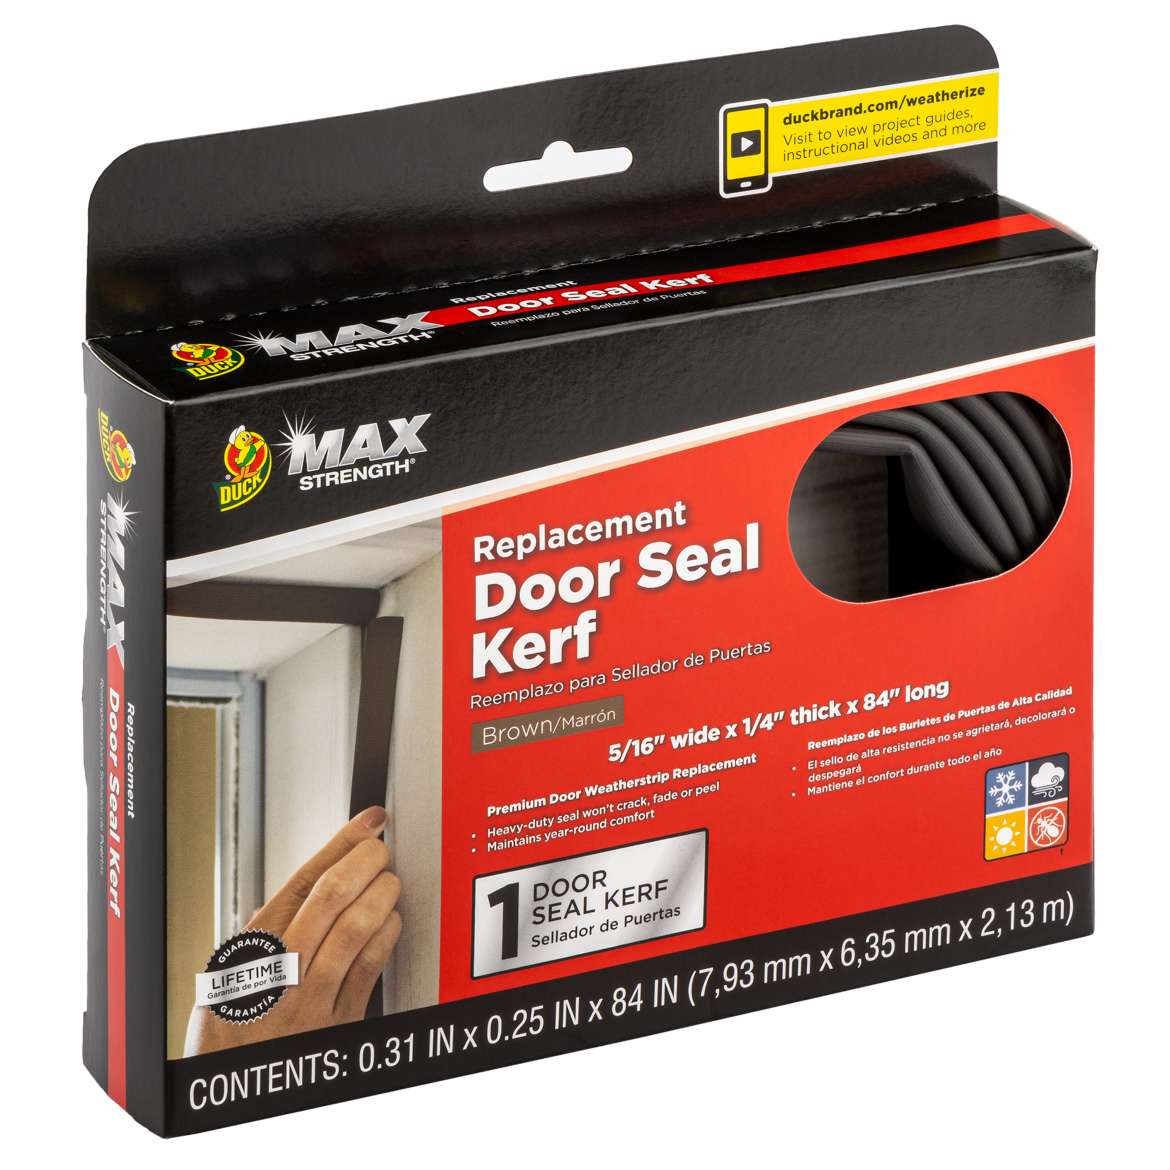 Max Strength Replacement Door Seal